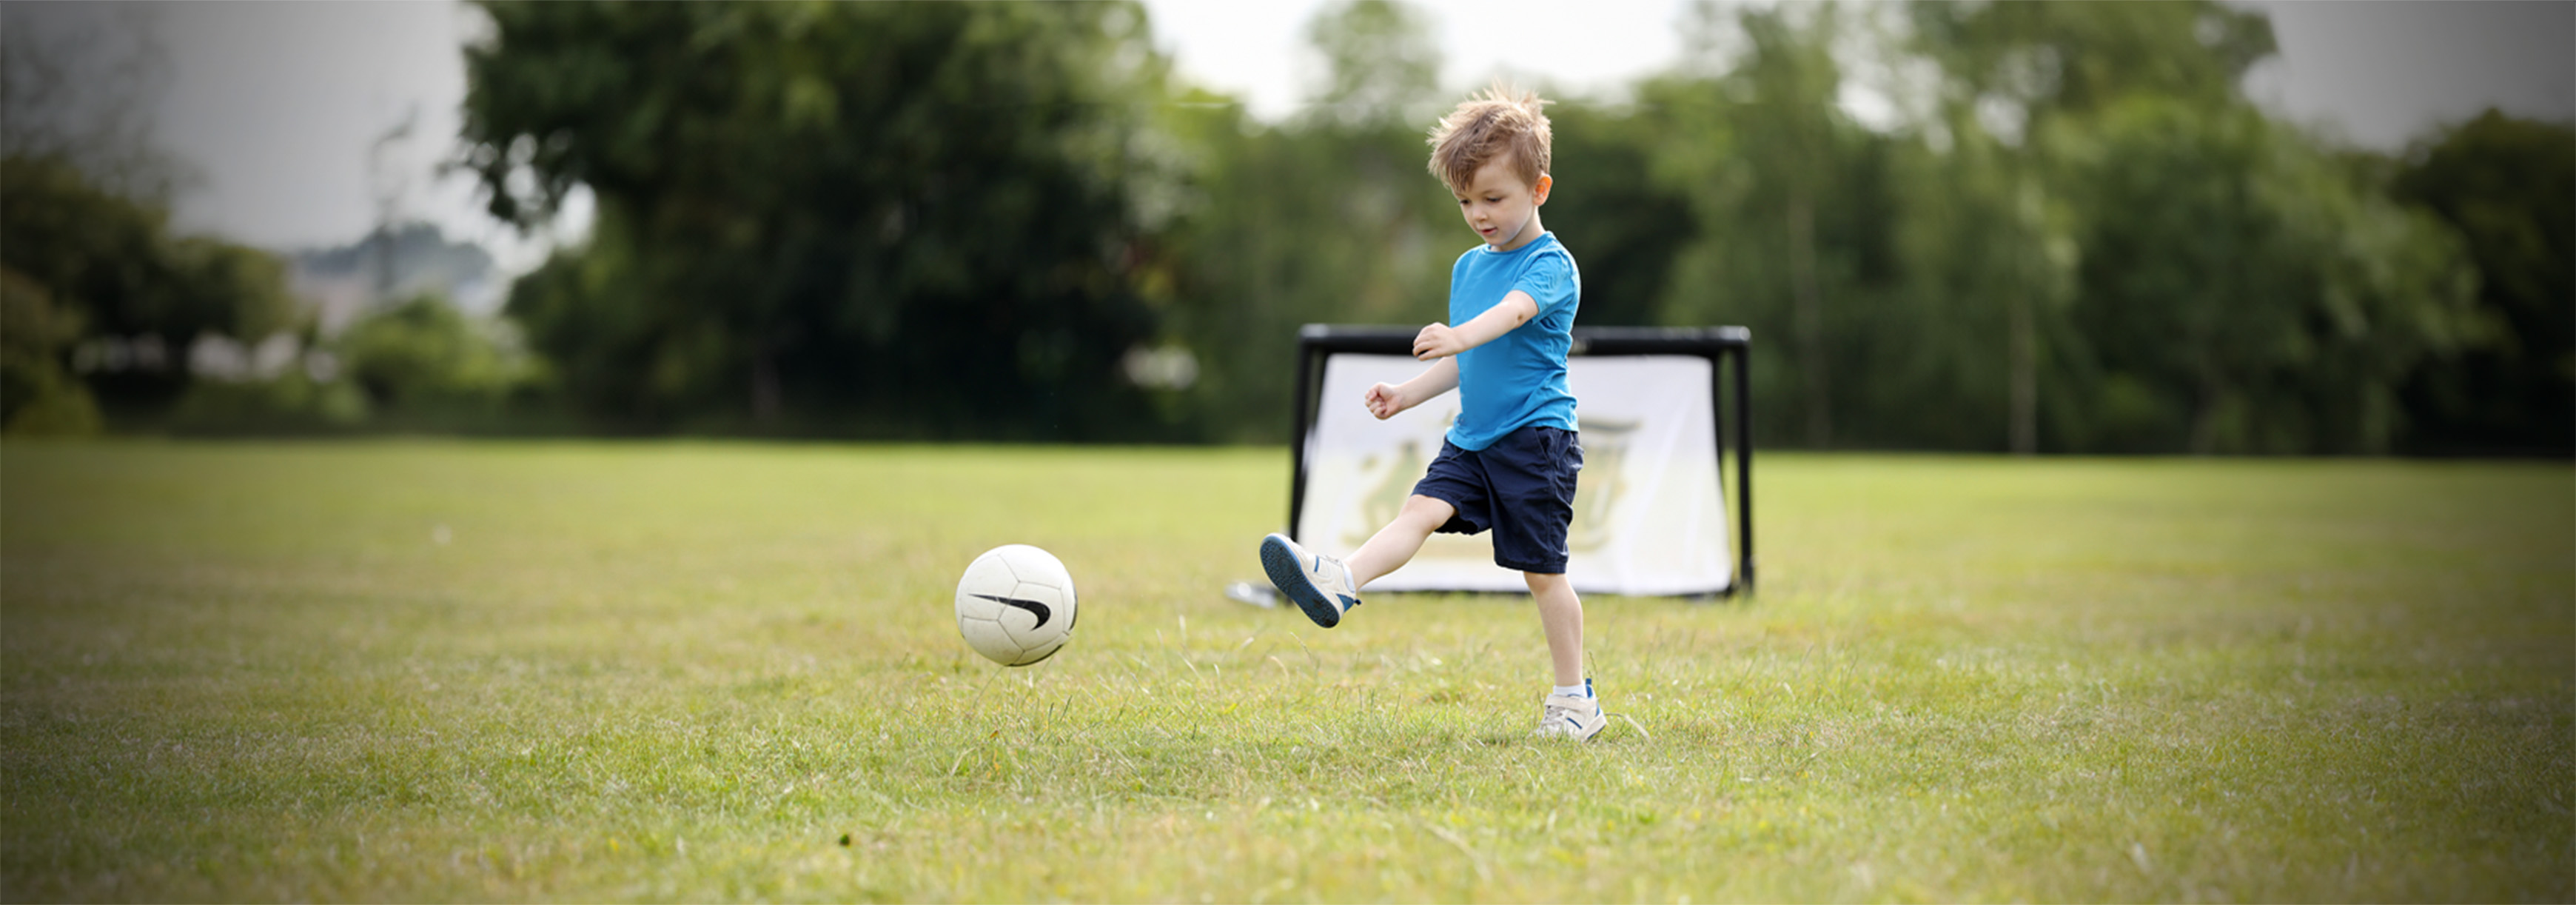 Young child kicks a ball.